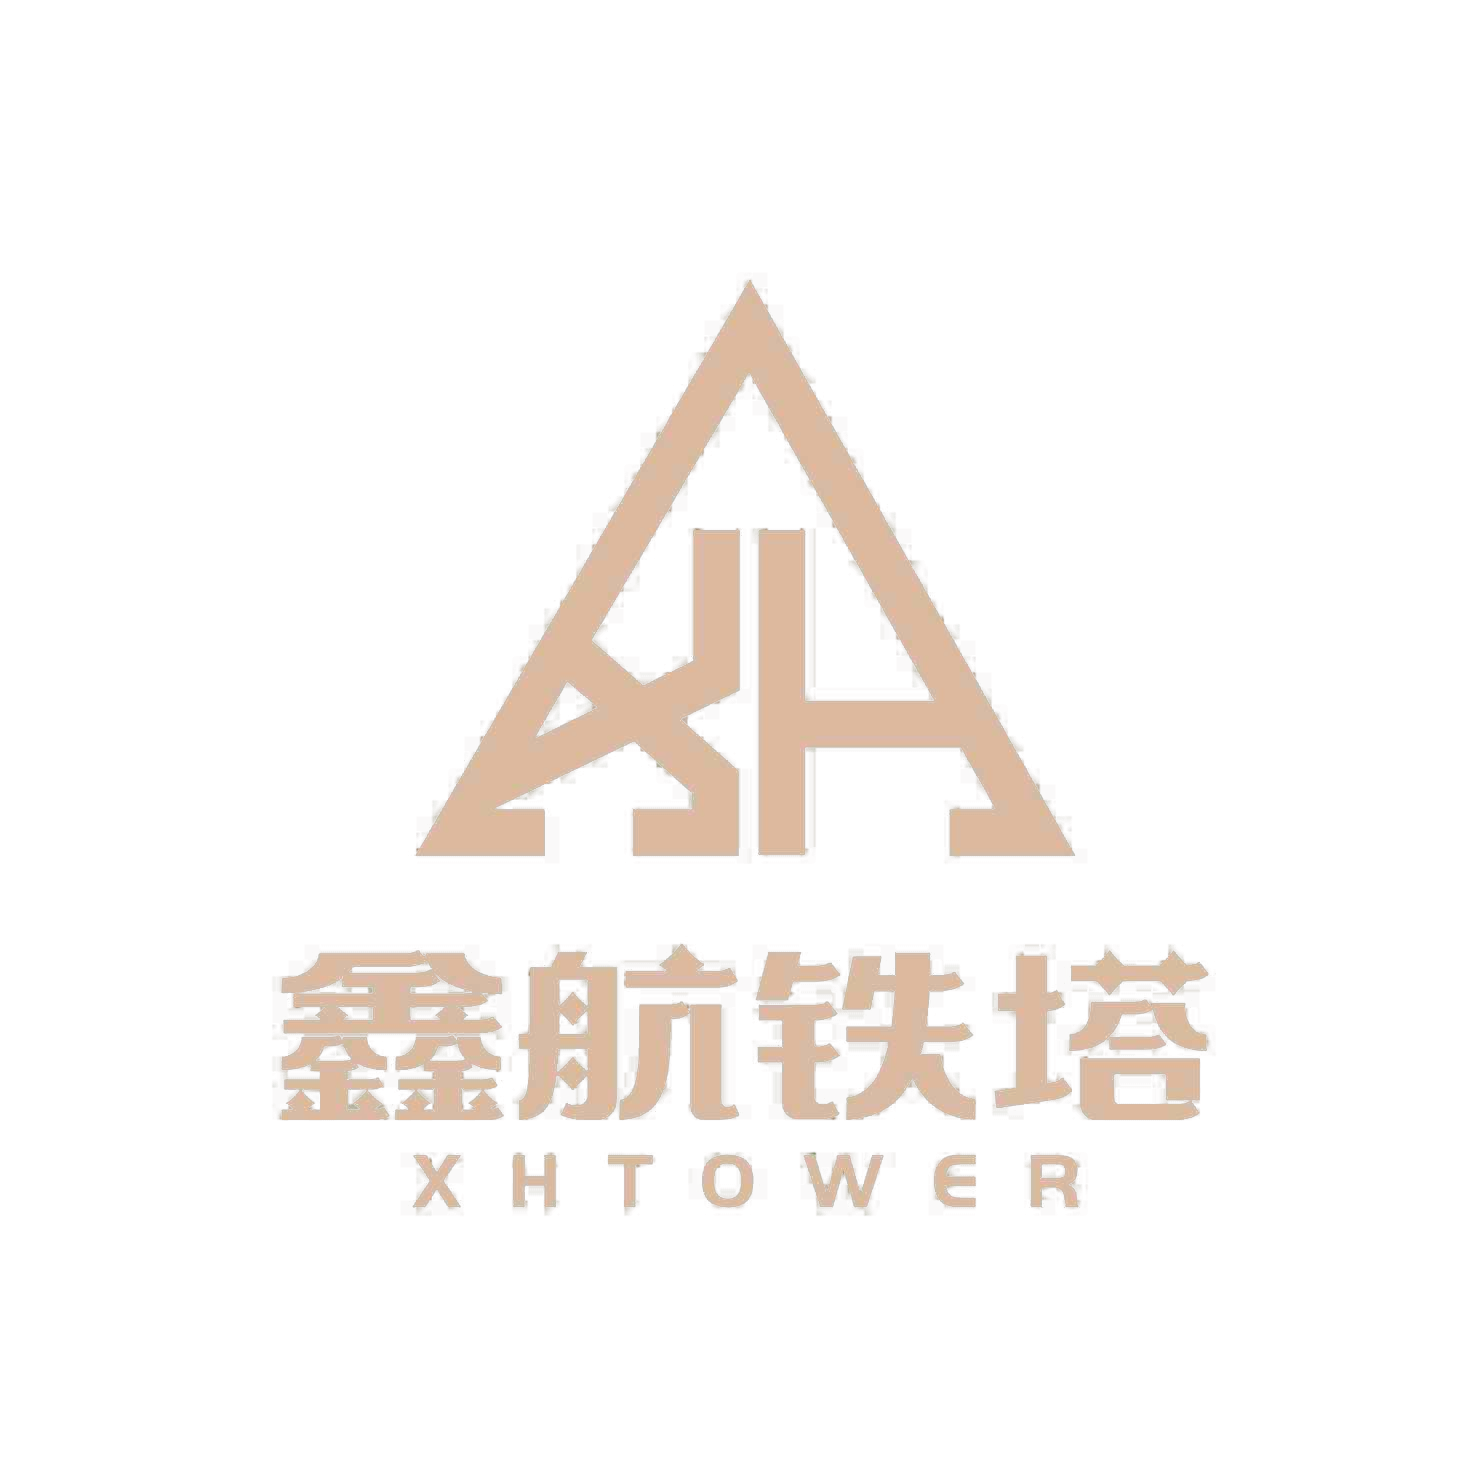 Компания Xinhang Tower Technology Co., Ltd.